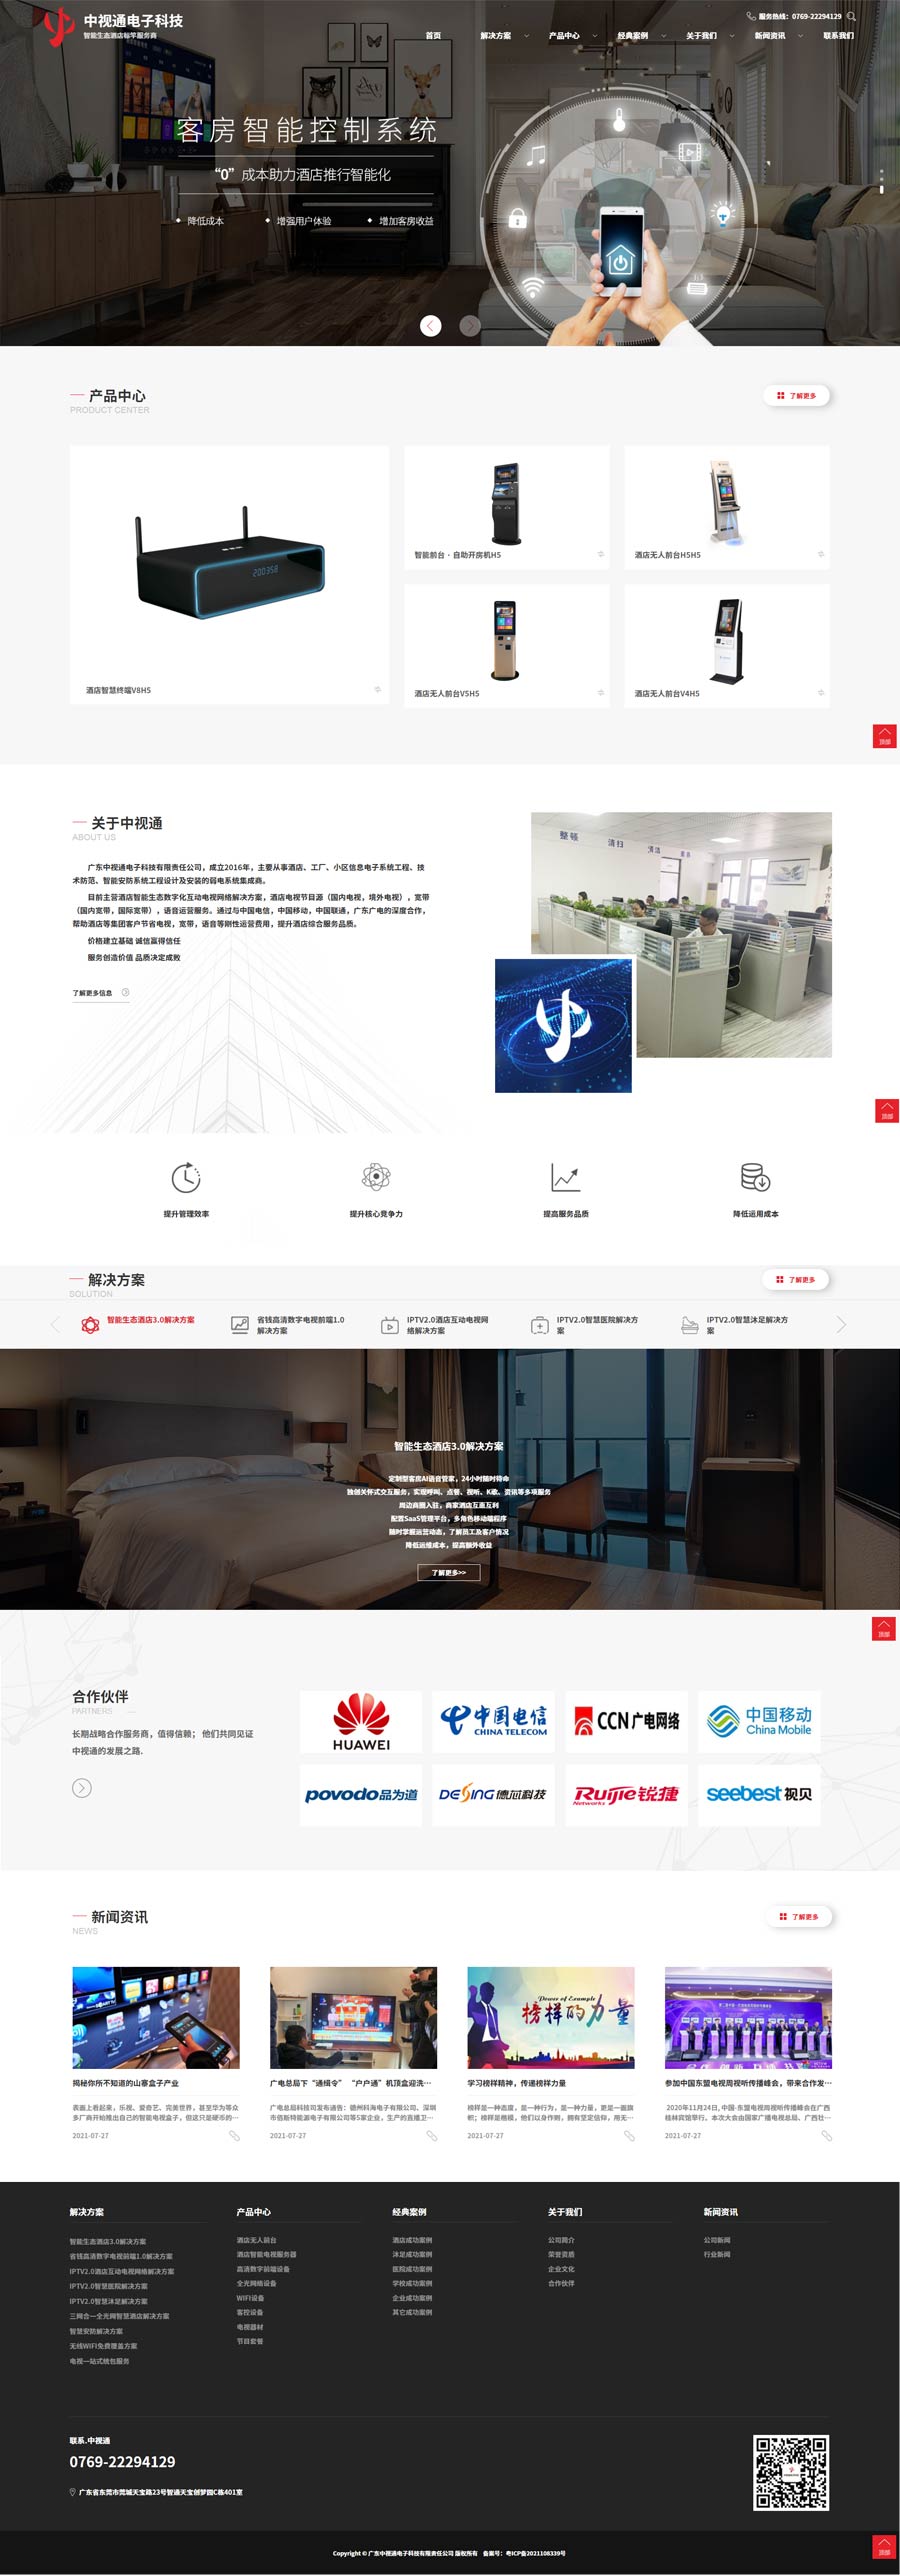 智能生态酒店数字化电视网络互动平台-智慧酒店-中视通电子.jpg